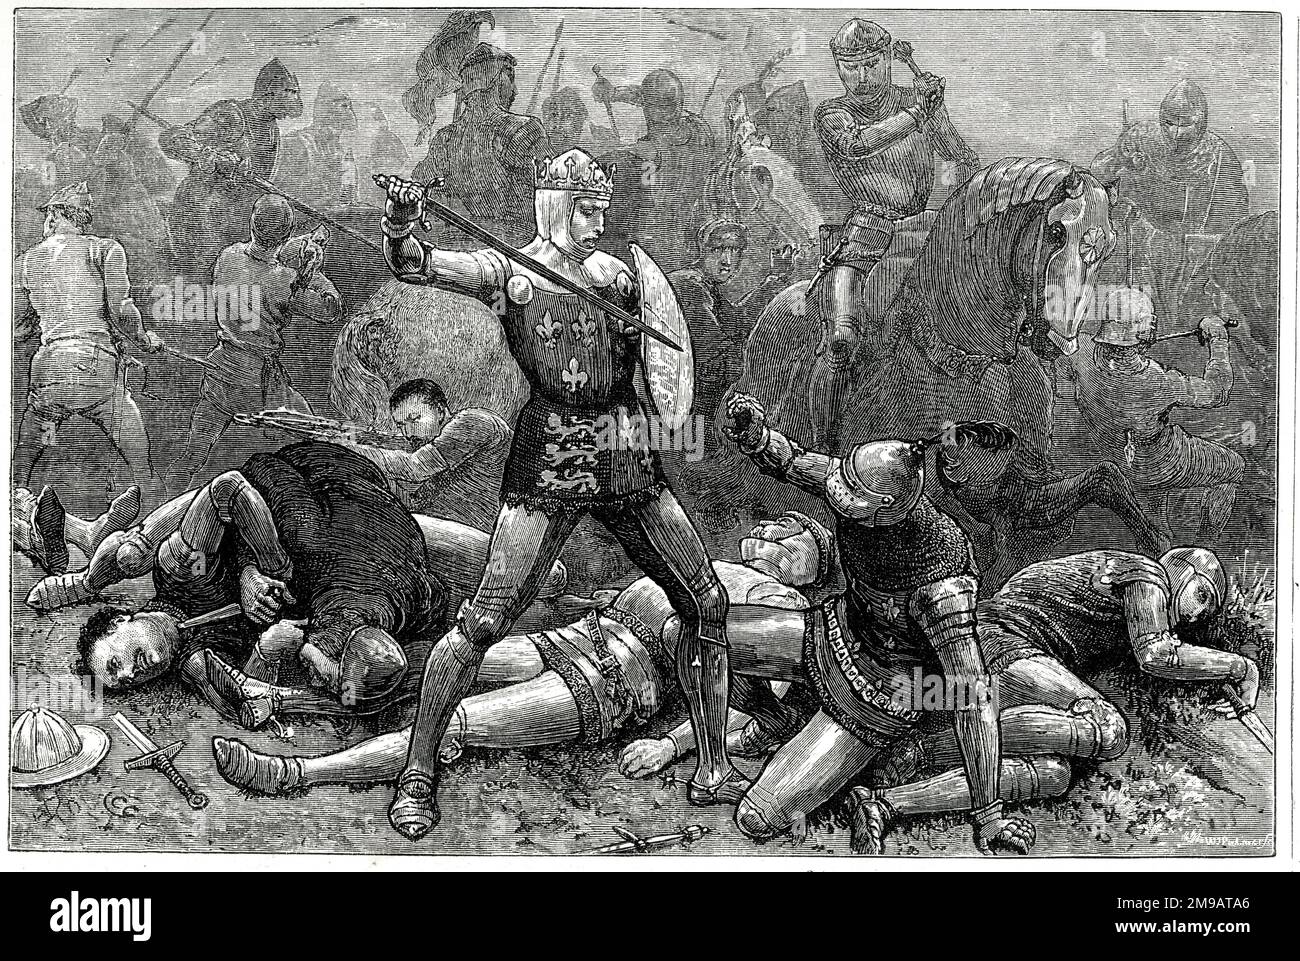 König Heinrich V. und Herzog von Alencon bei der Schlacht von Agincourt, 25. Oktober 1415, Teil des Hundertjährigen Krieges (1337-1453). John I. von Alencon wurde in der Schlacht getötet. Stockfoto